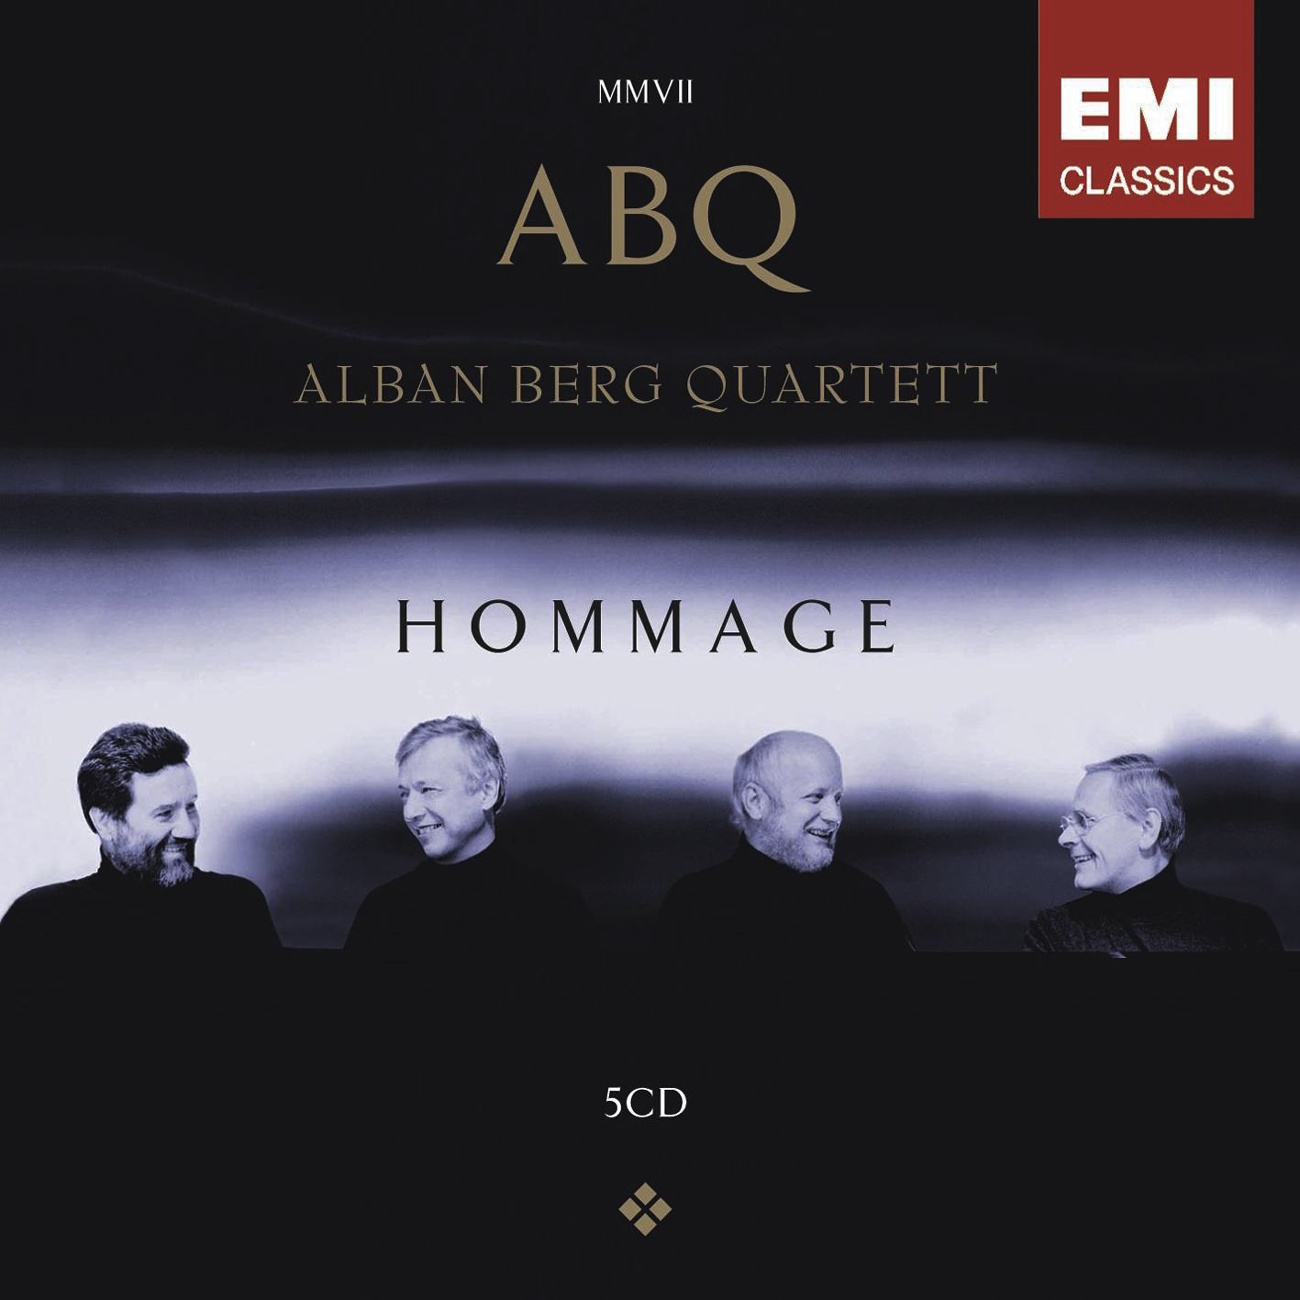 String Quartet No. 2 in A Minor, Op. 13: Intermezzo (Allegretto con moto - Allegro di molto)